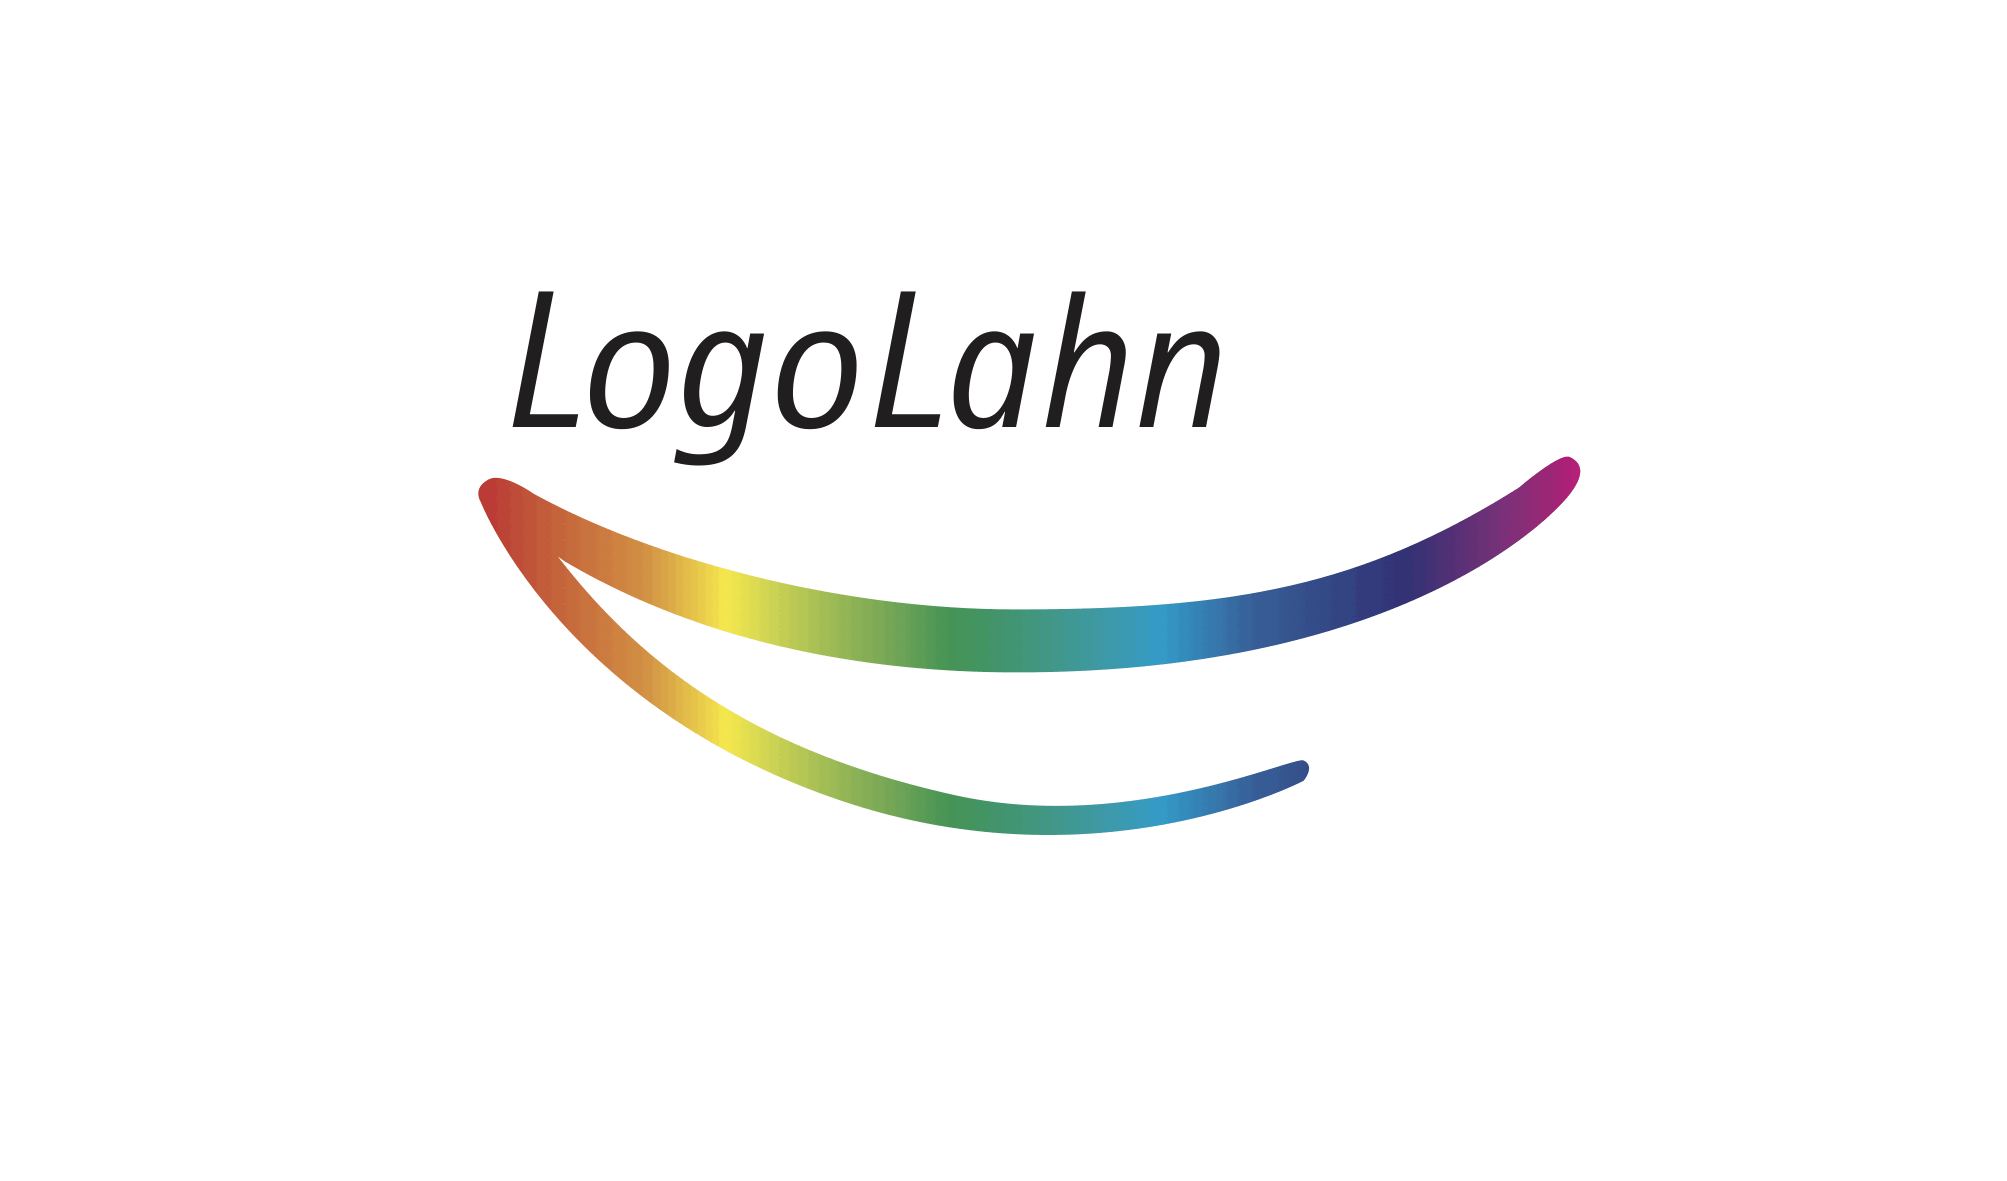 LogoLahn